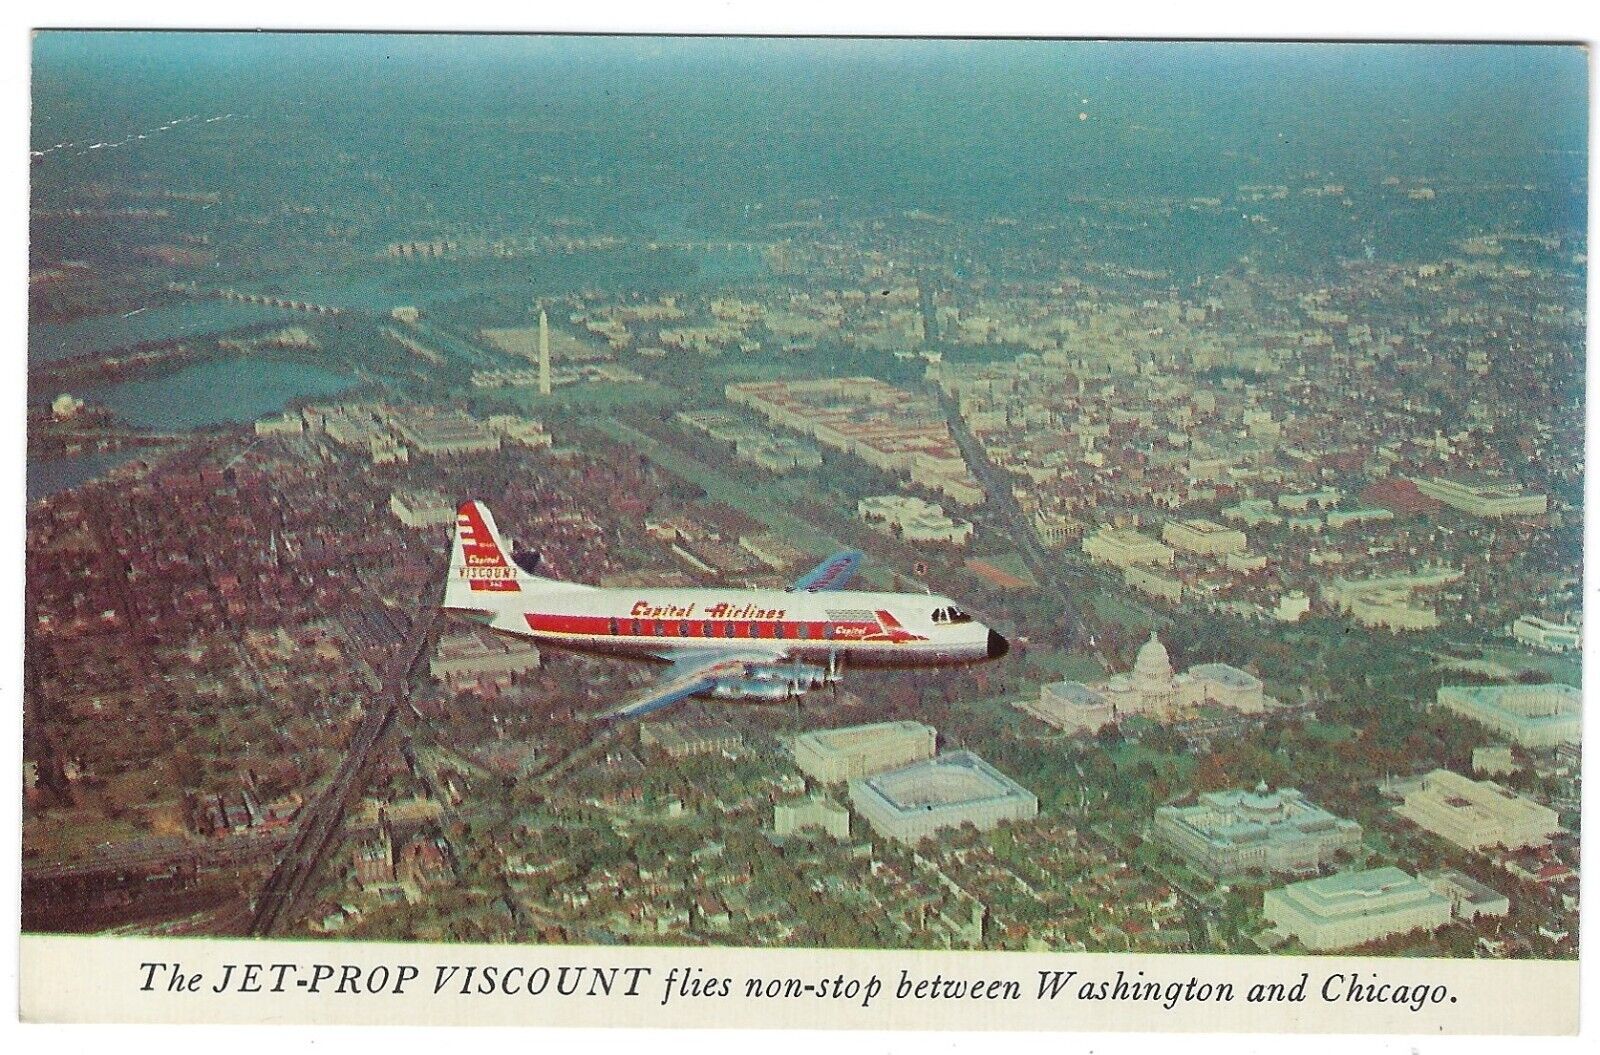 Capital Airlines Jet Prop Viscount Plane, Washington DC - 1950s Chrome Postcard